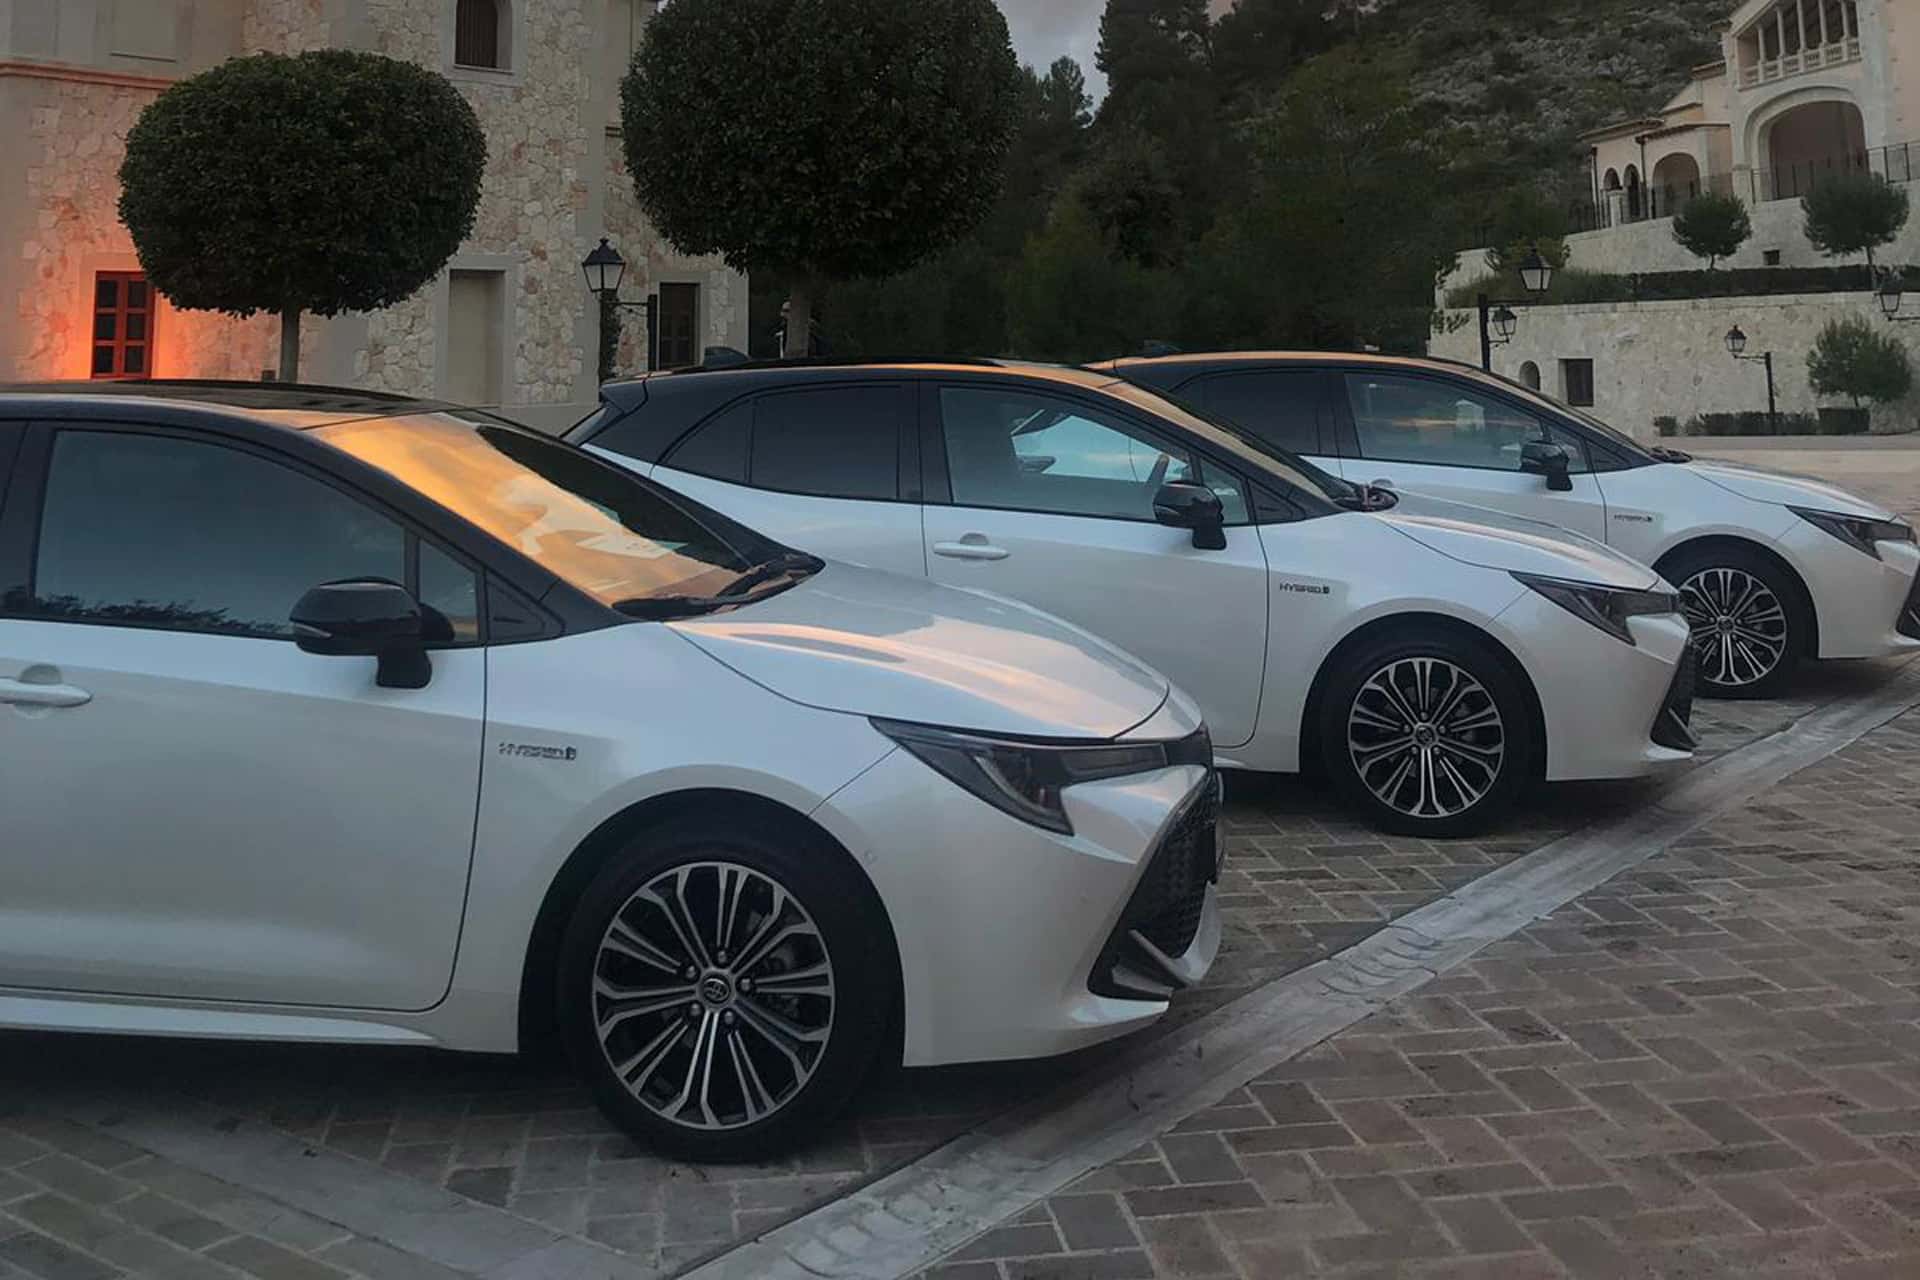 Toyota-Corolla-Launch-event-in-Mallorca-7